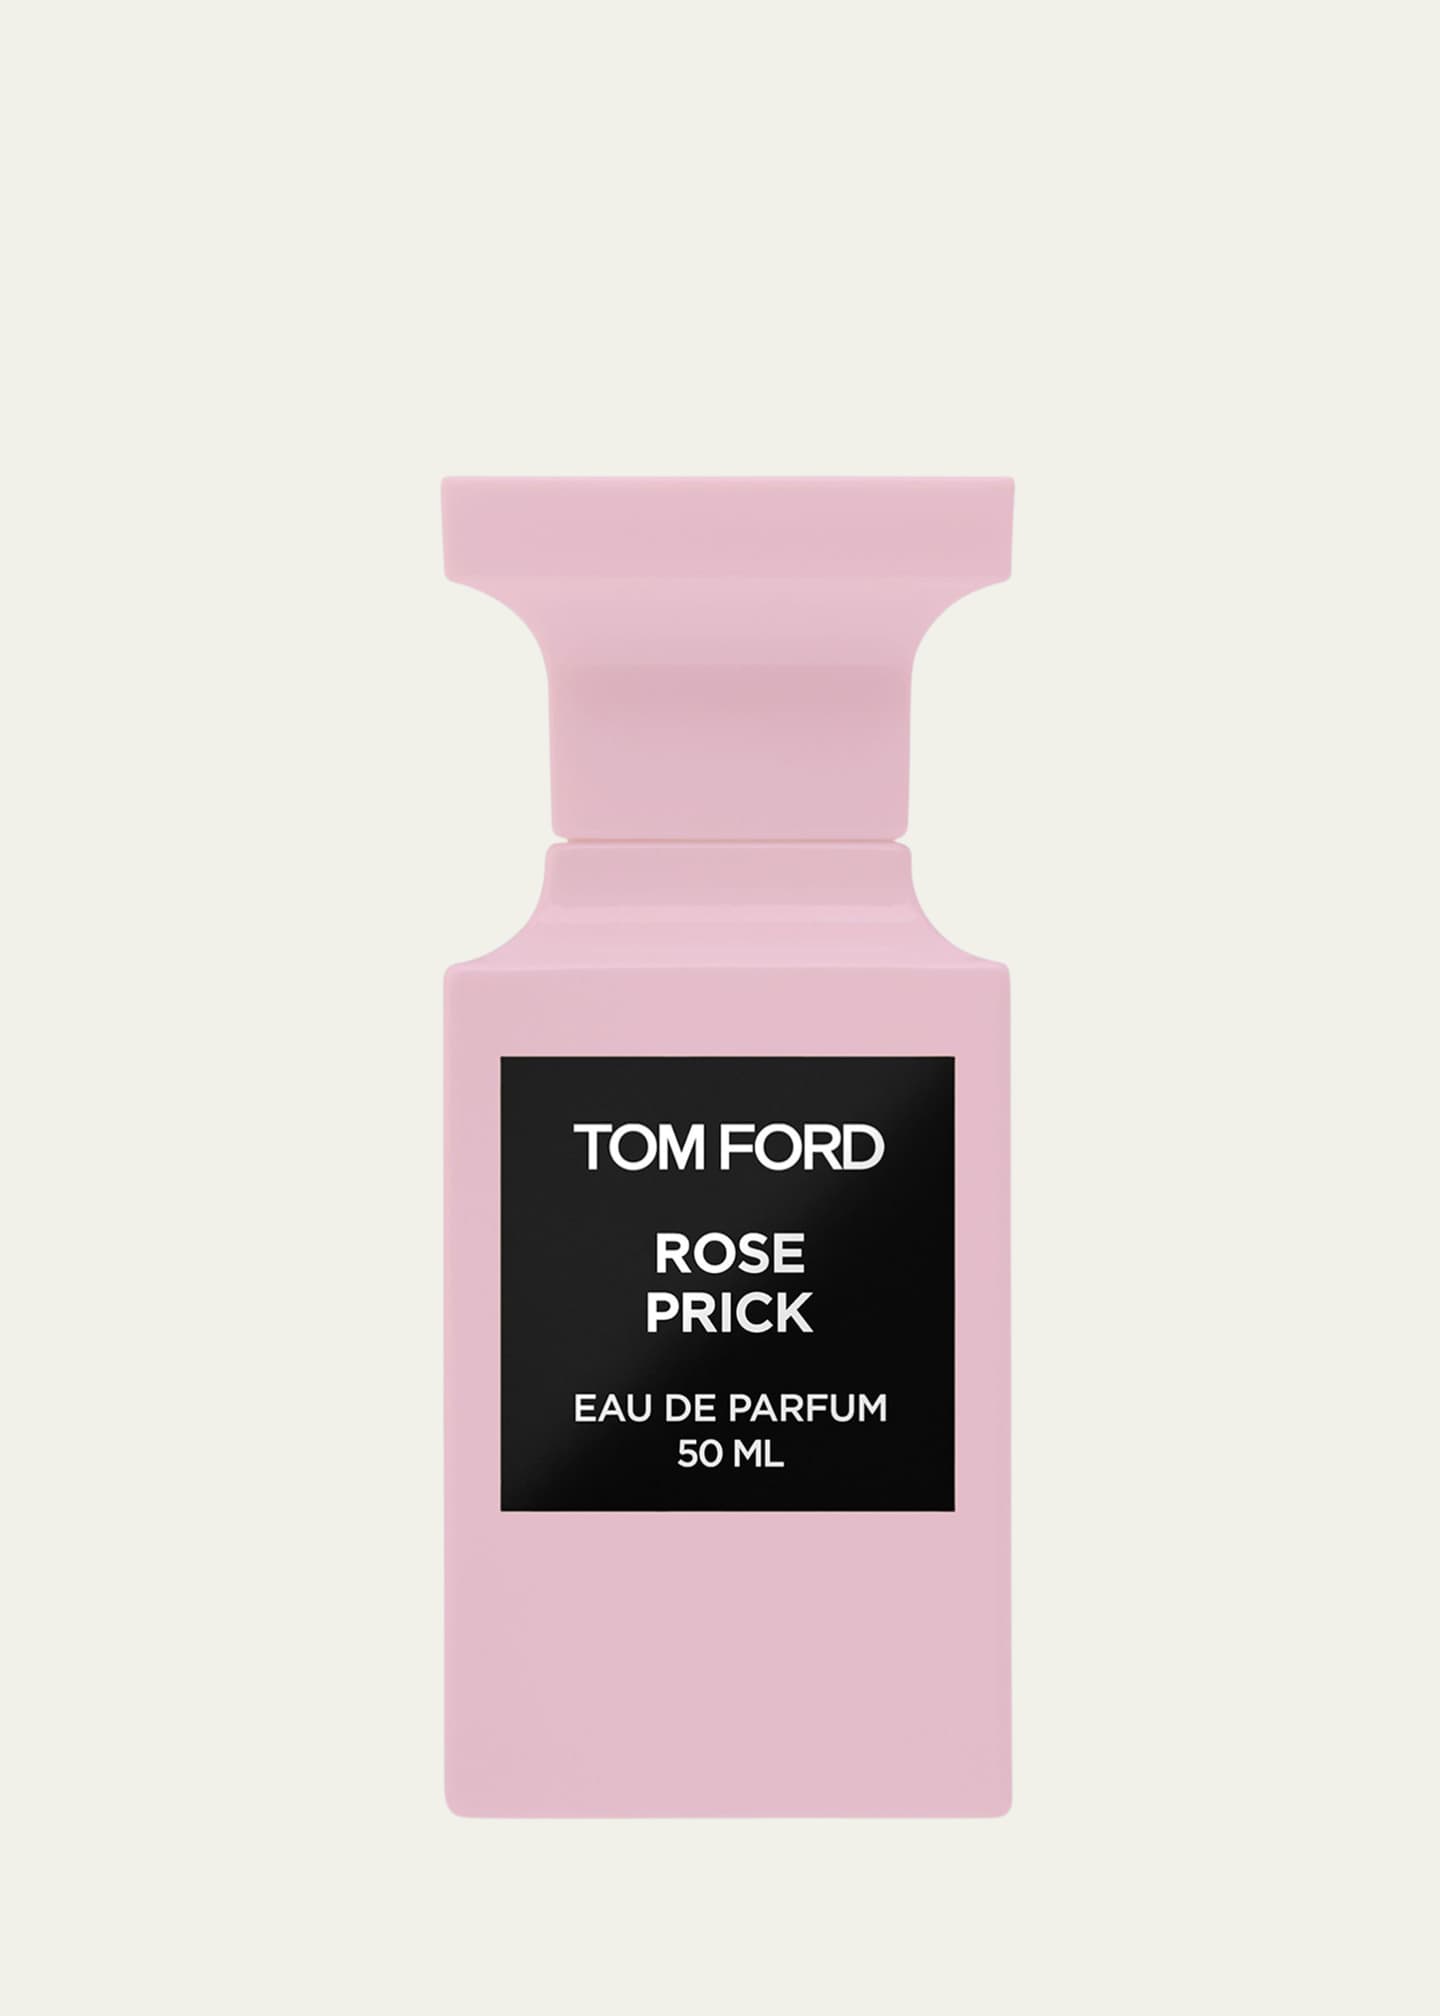 TOM FORD Rose Prick Eau de Parfum, oz./ 50 mL - Bergdorf Goodman